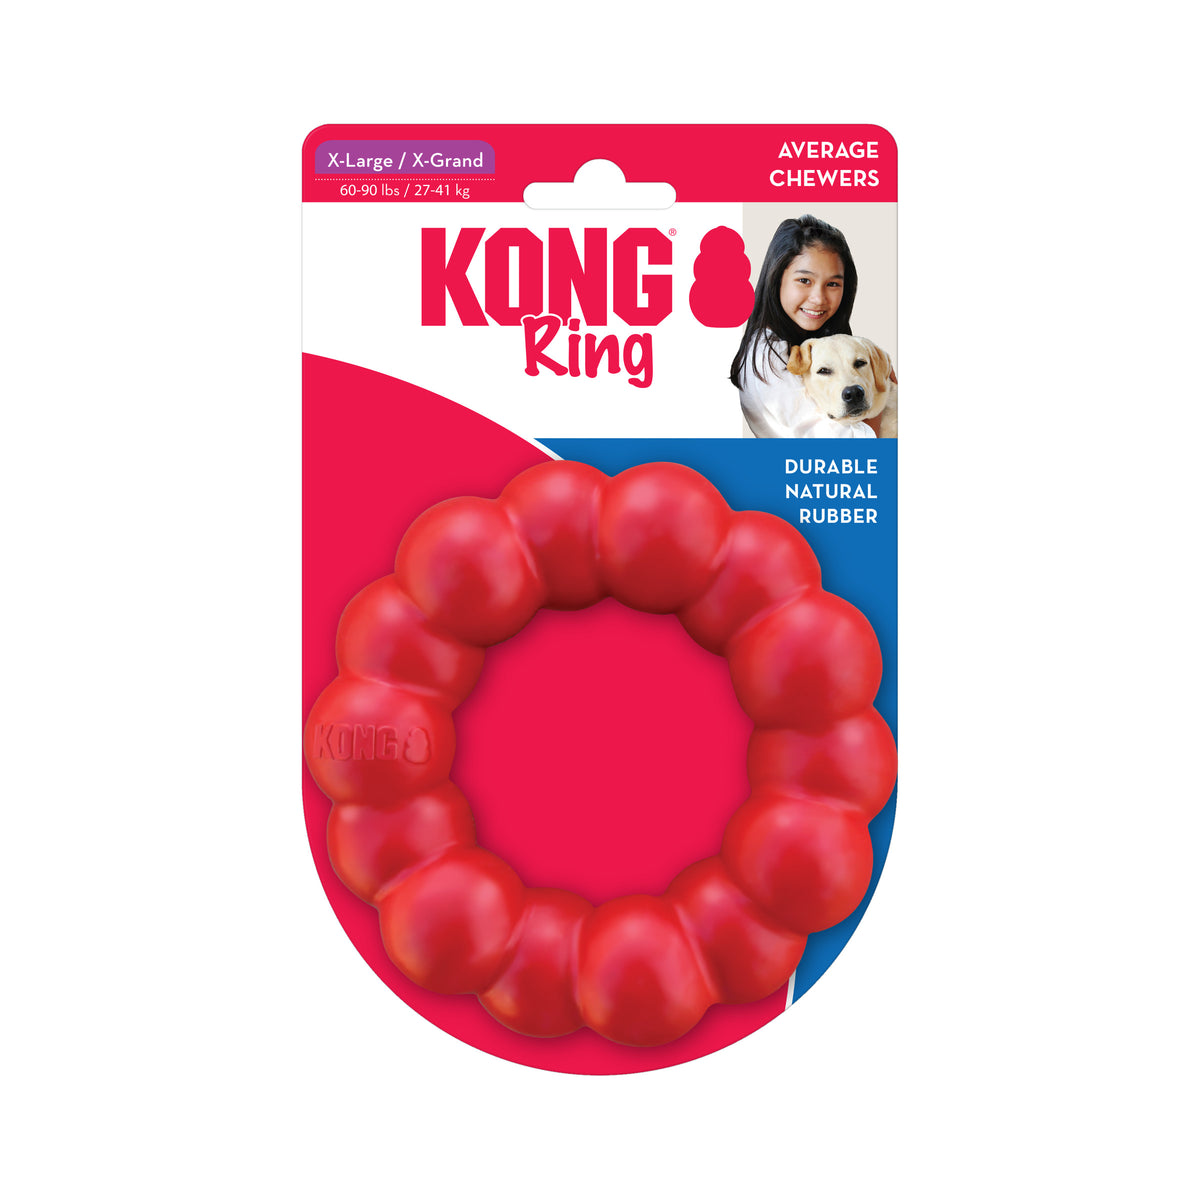 KONG Ring